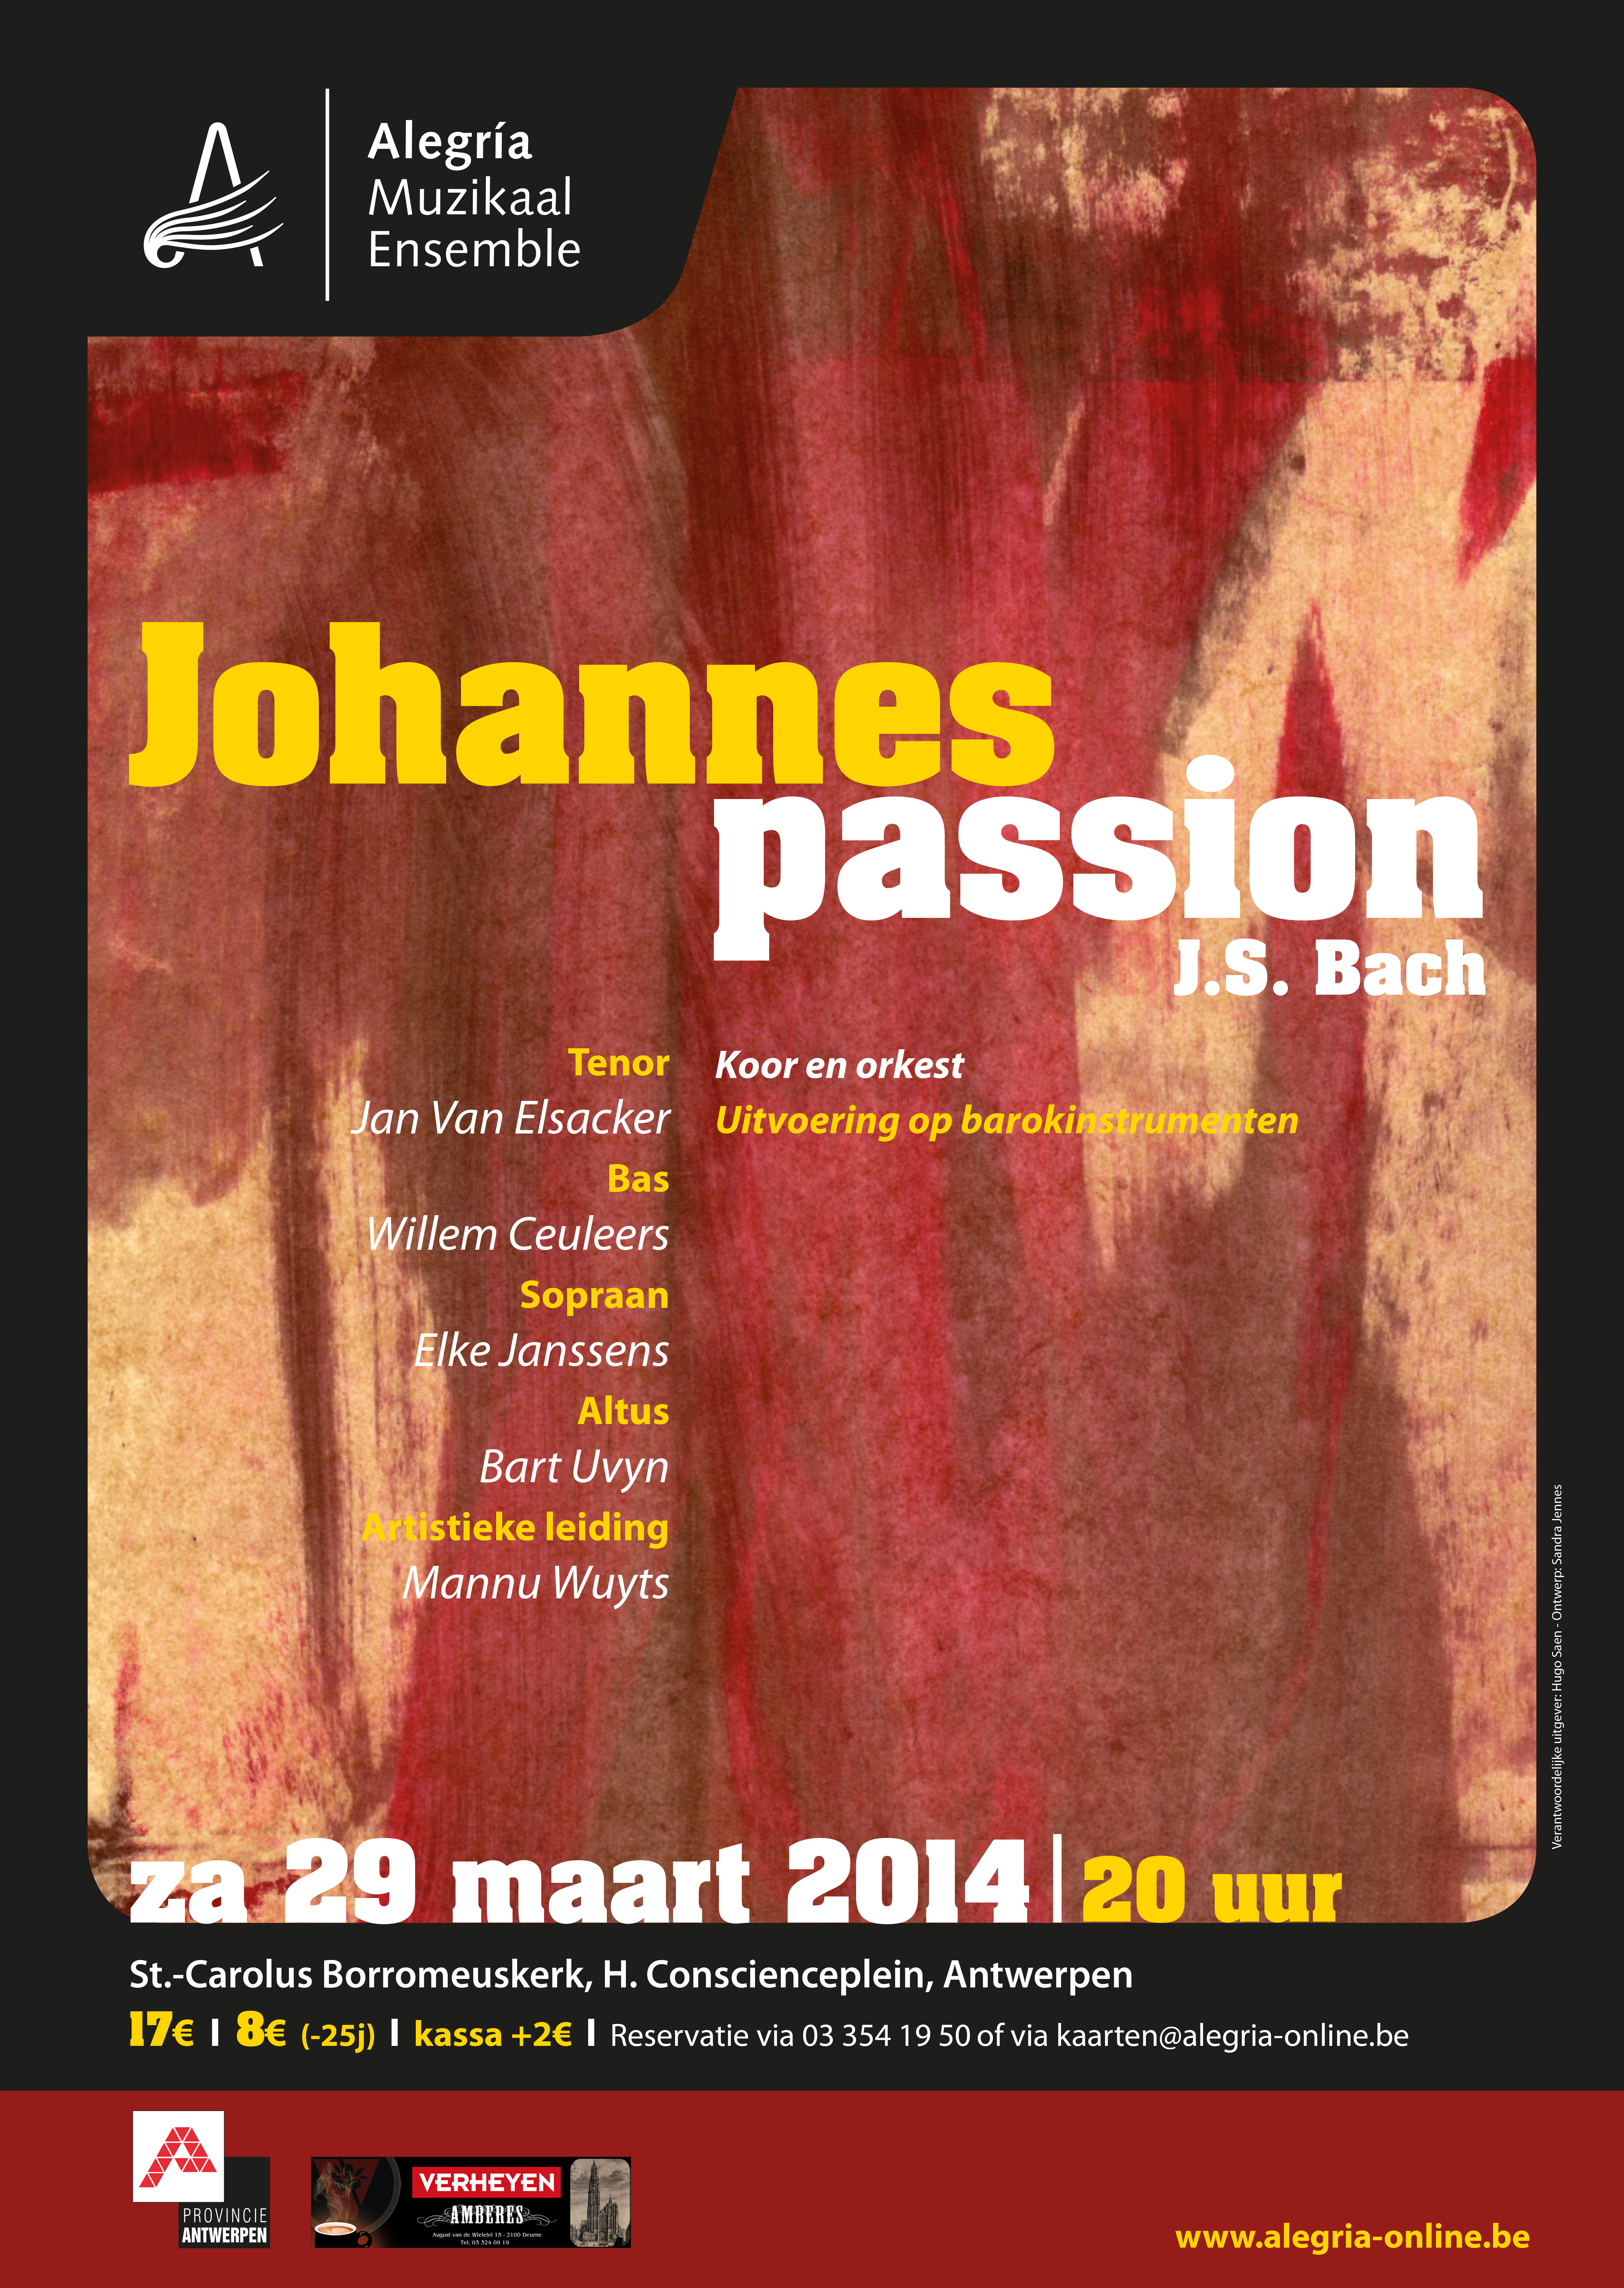 Affiche van het concert van de Johannes Passion